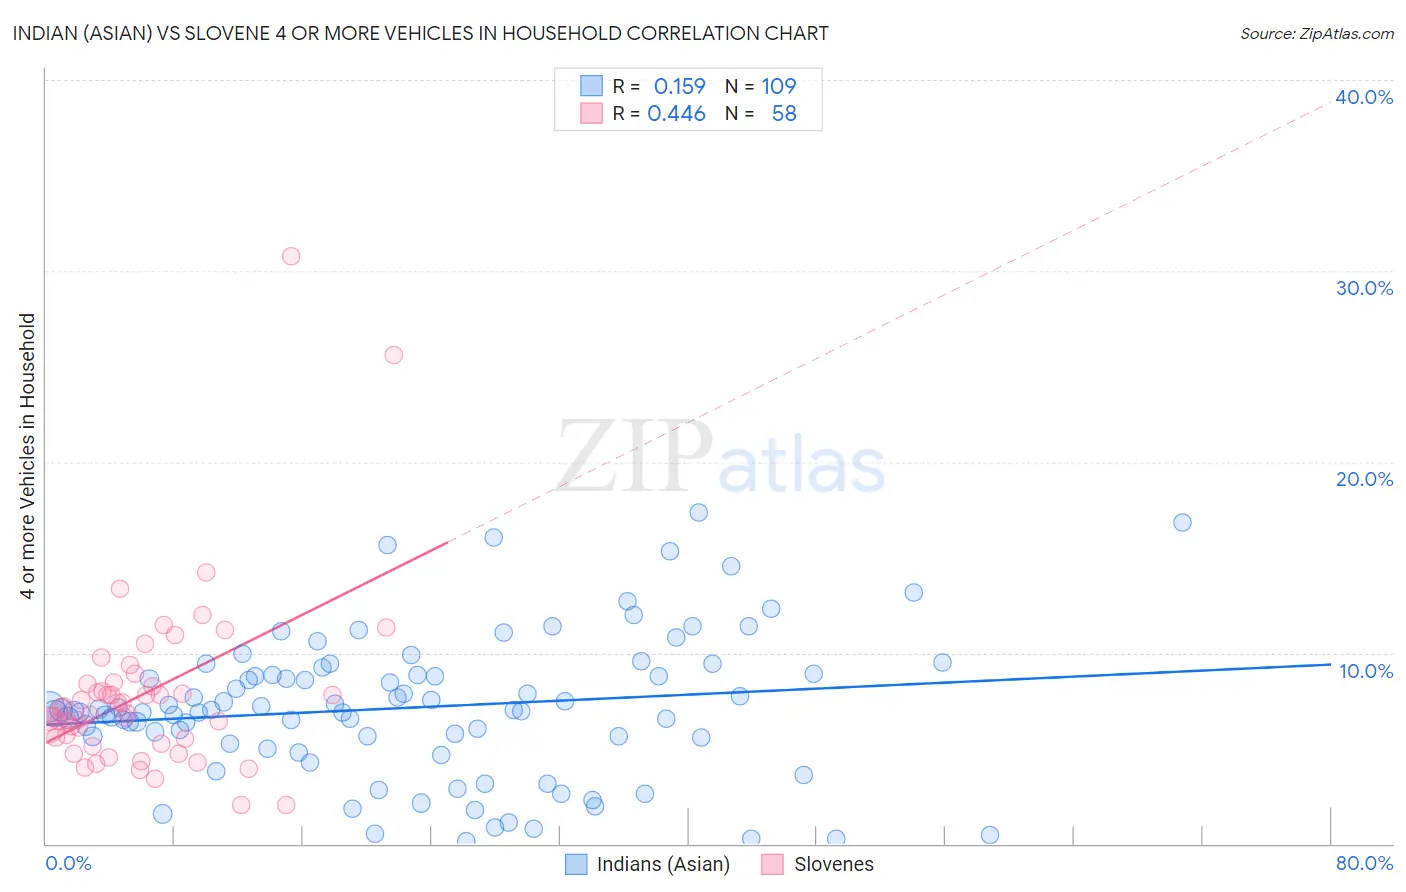 Indian (Asian) vs Slovene 4 or more Vehicles in Household